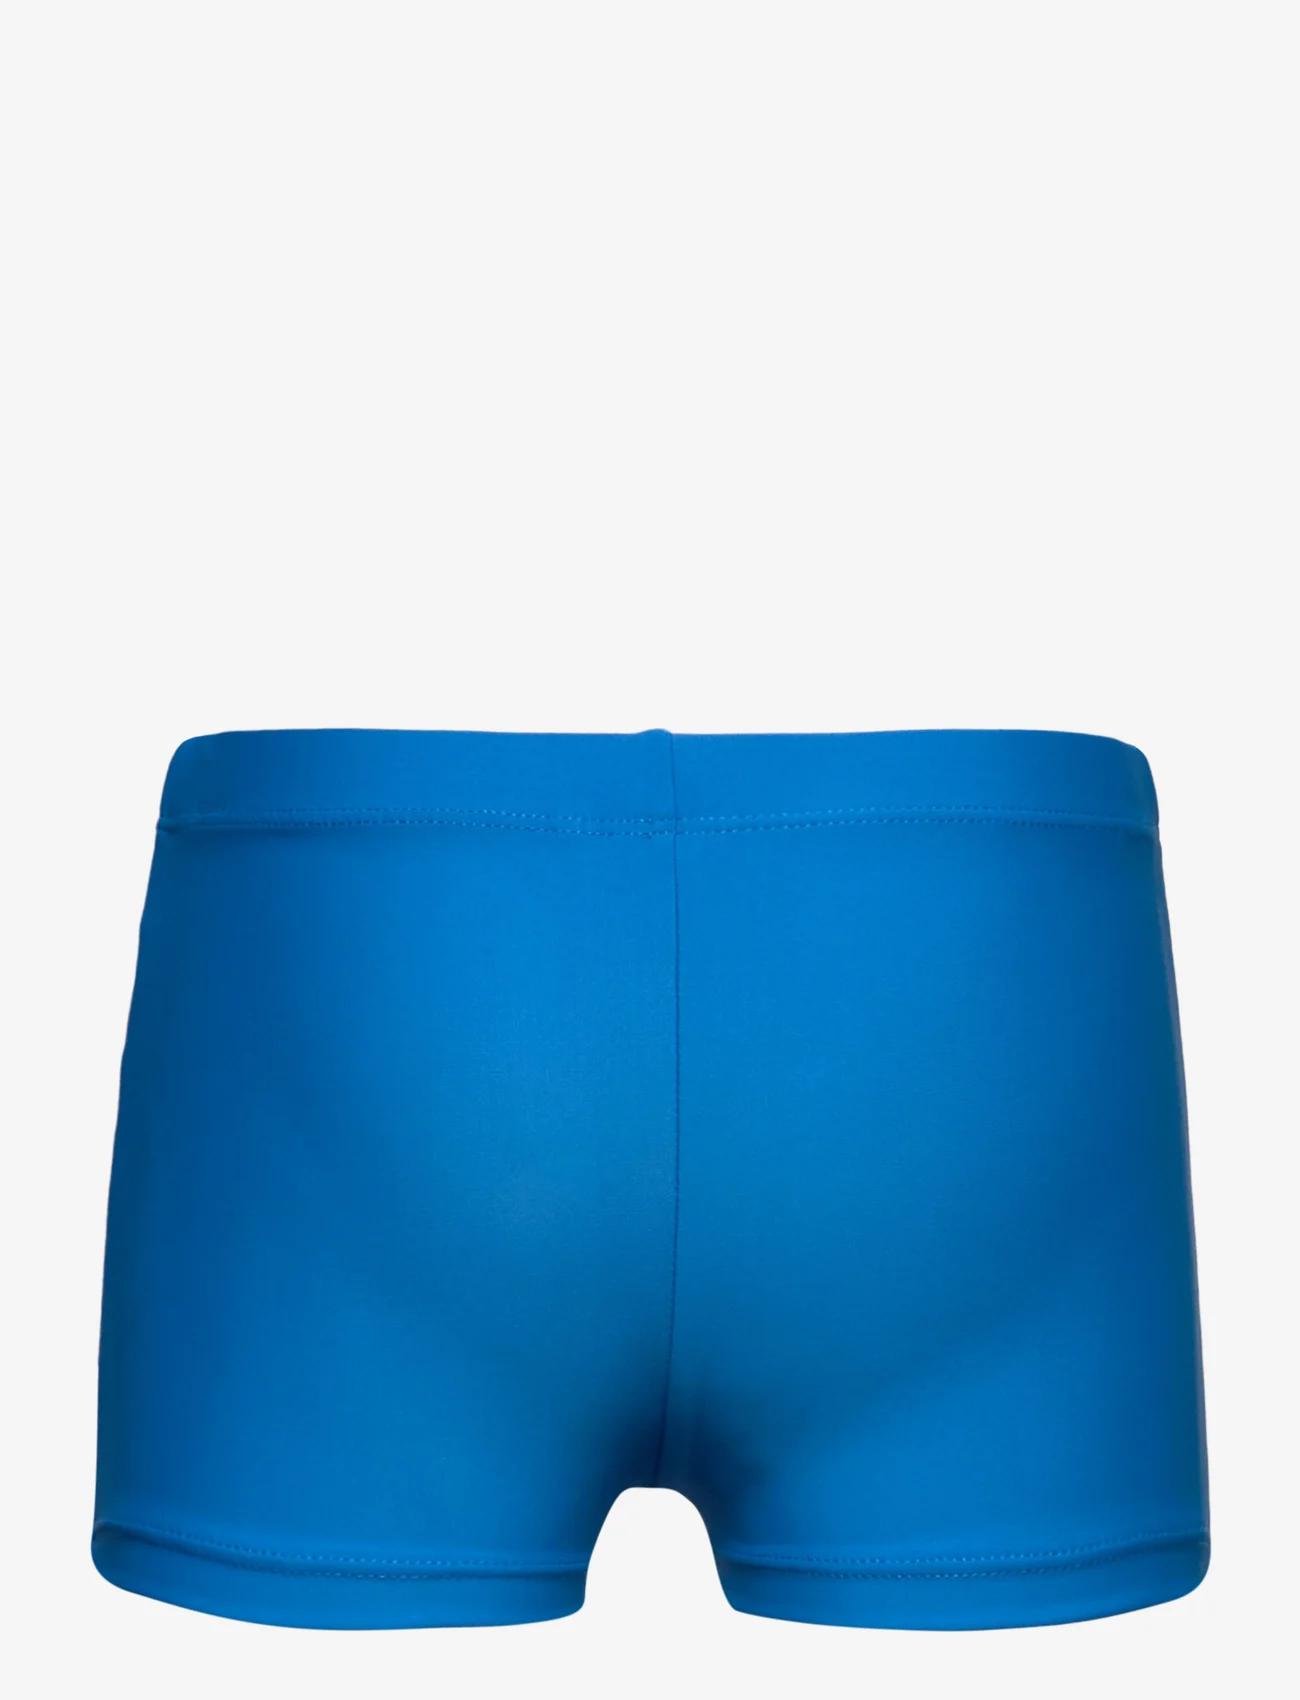 Marvel - Board short swimwear - sommerschnäppchen - blue - 1